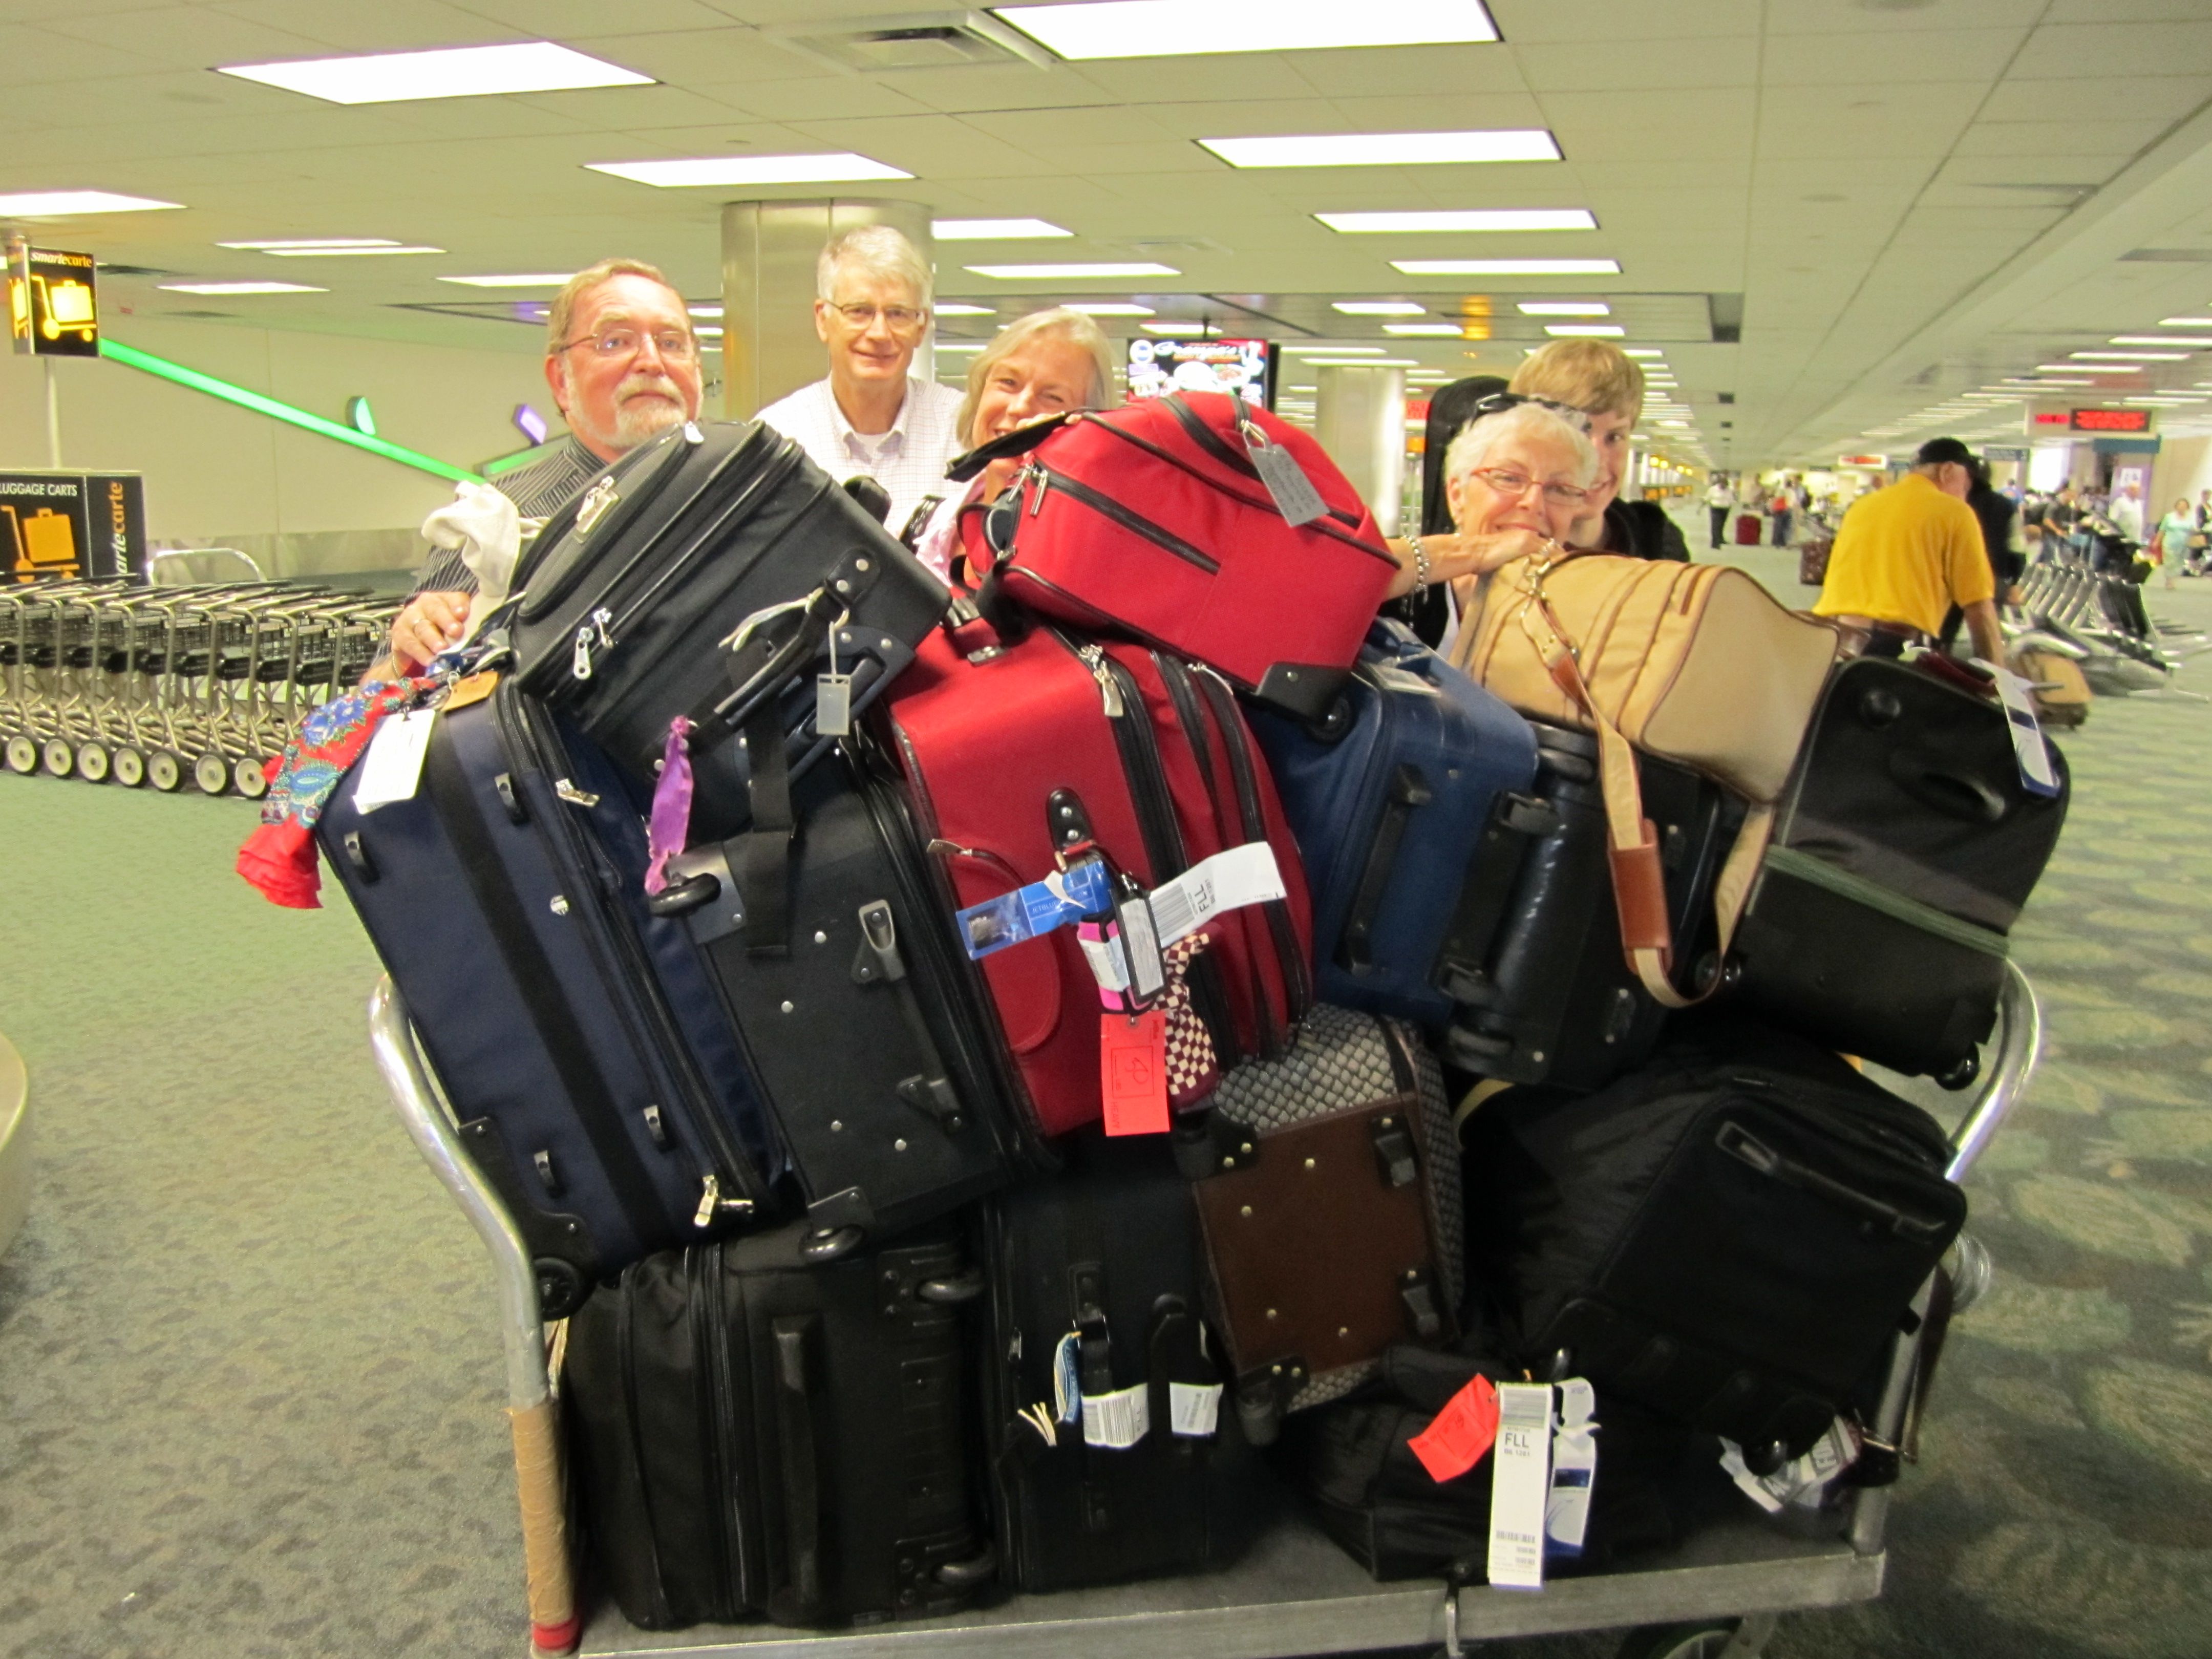 passageiros no aeroporto com muita bagagem